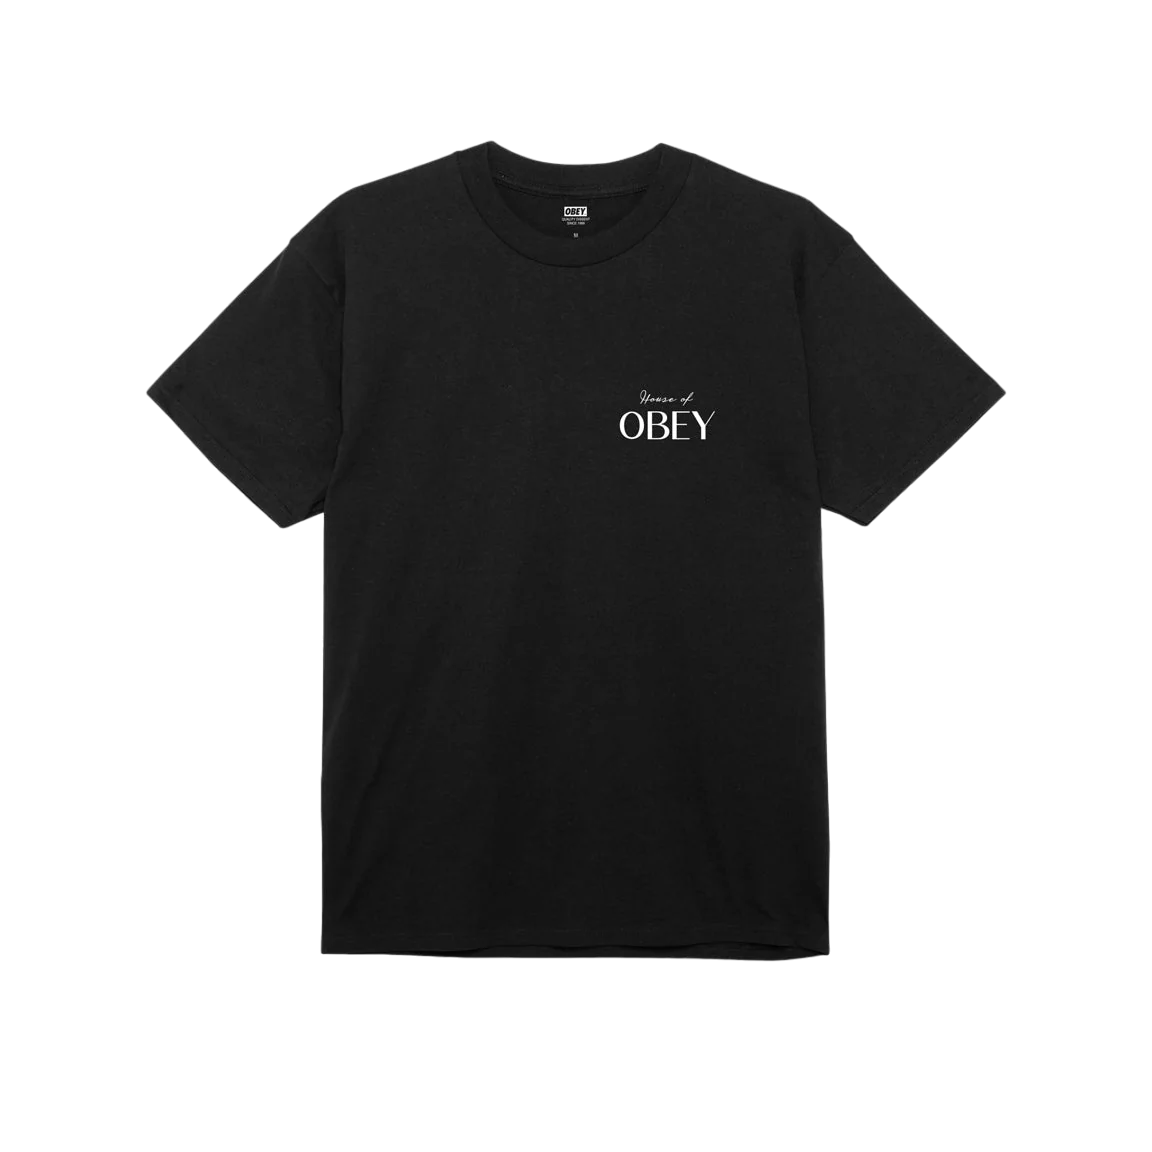 Obey maglietta manica corta da uomo House of Obey 165263753 A950800 nero